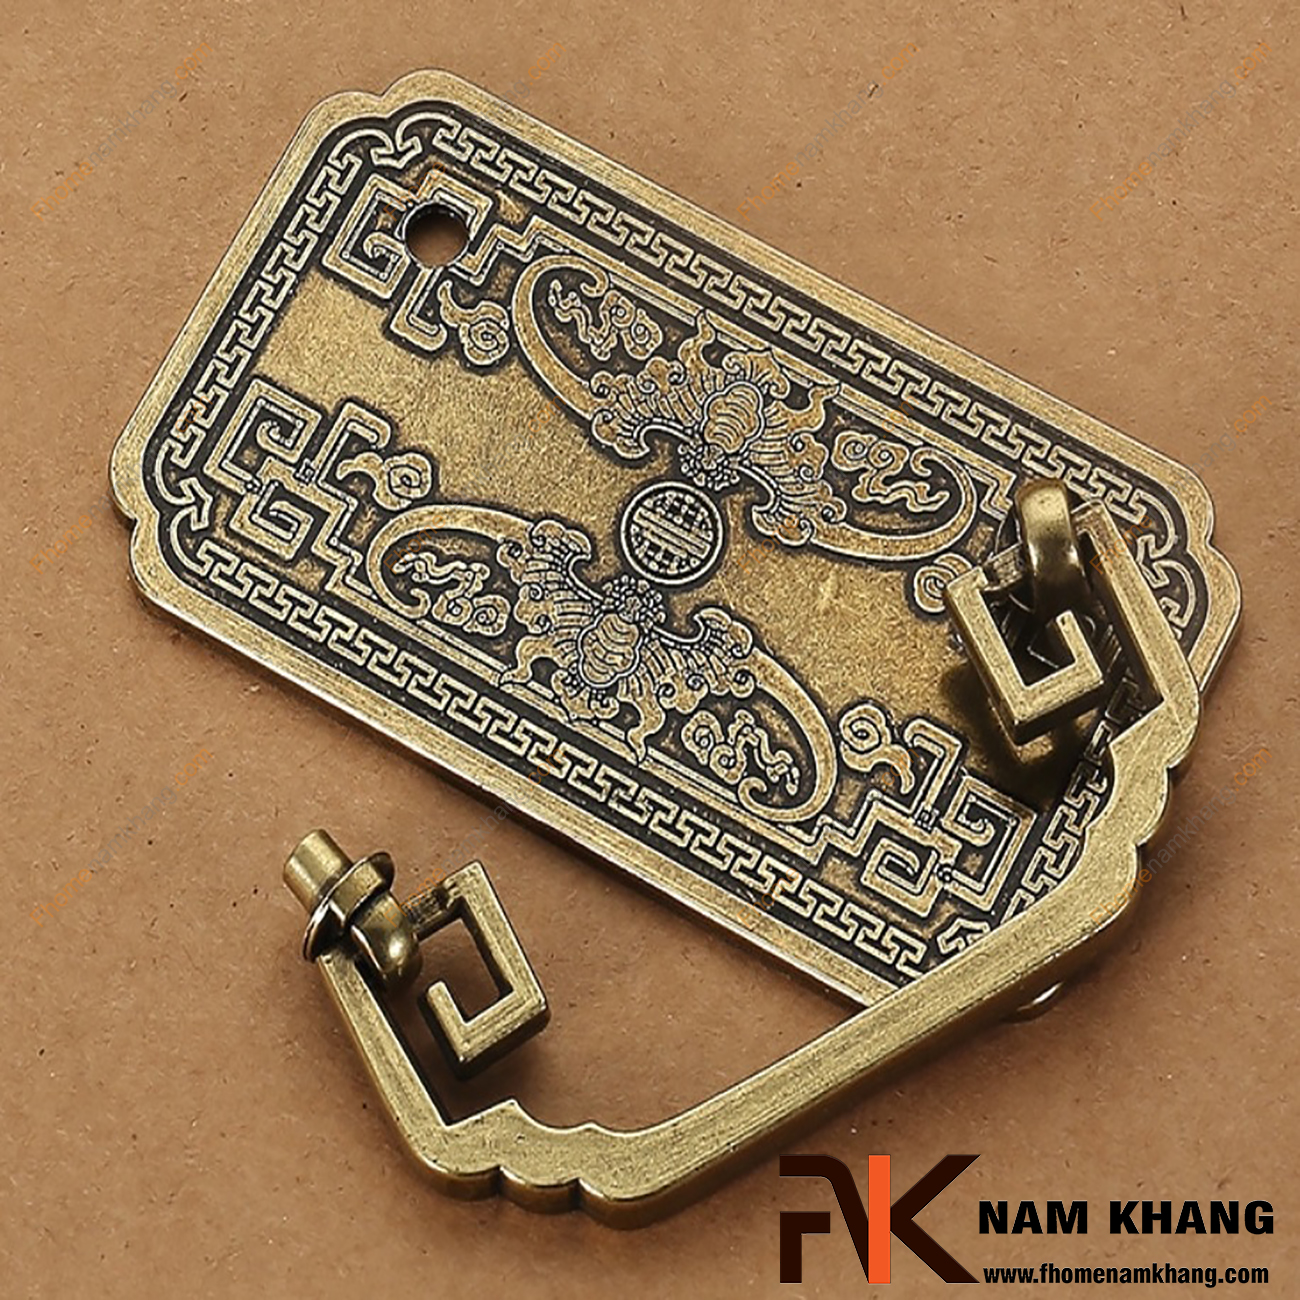 Tay nắm tủ họa tiết Trung cổ NK096-C được ghép nối từ hai phần cơ bản là phần đế và phần vòng nắm. Phần vòng nắm có khuôn dạng vuông chữ thập trông rất độc đáo và sáng tạo.